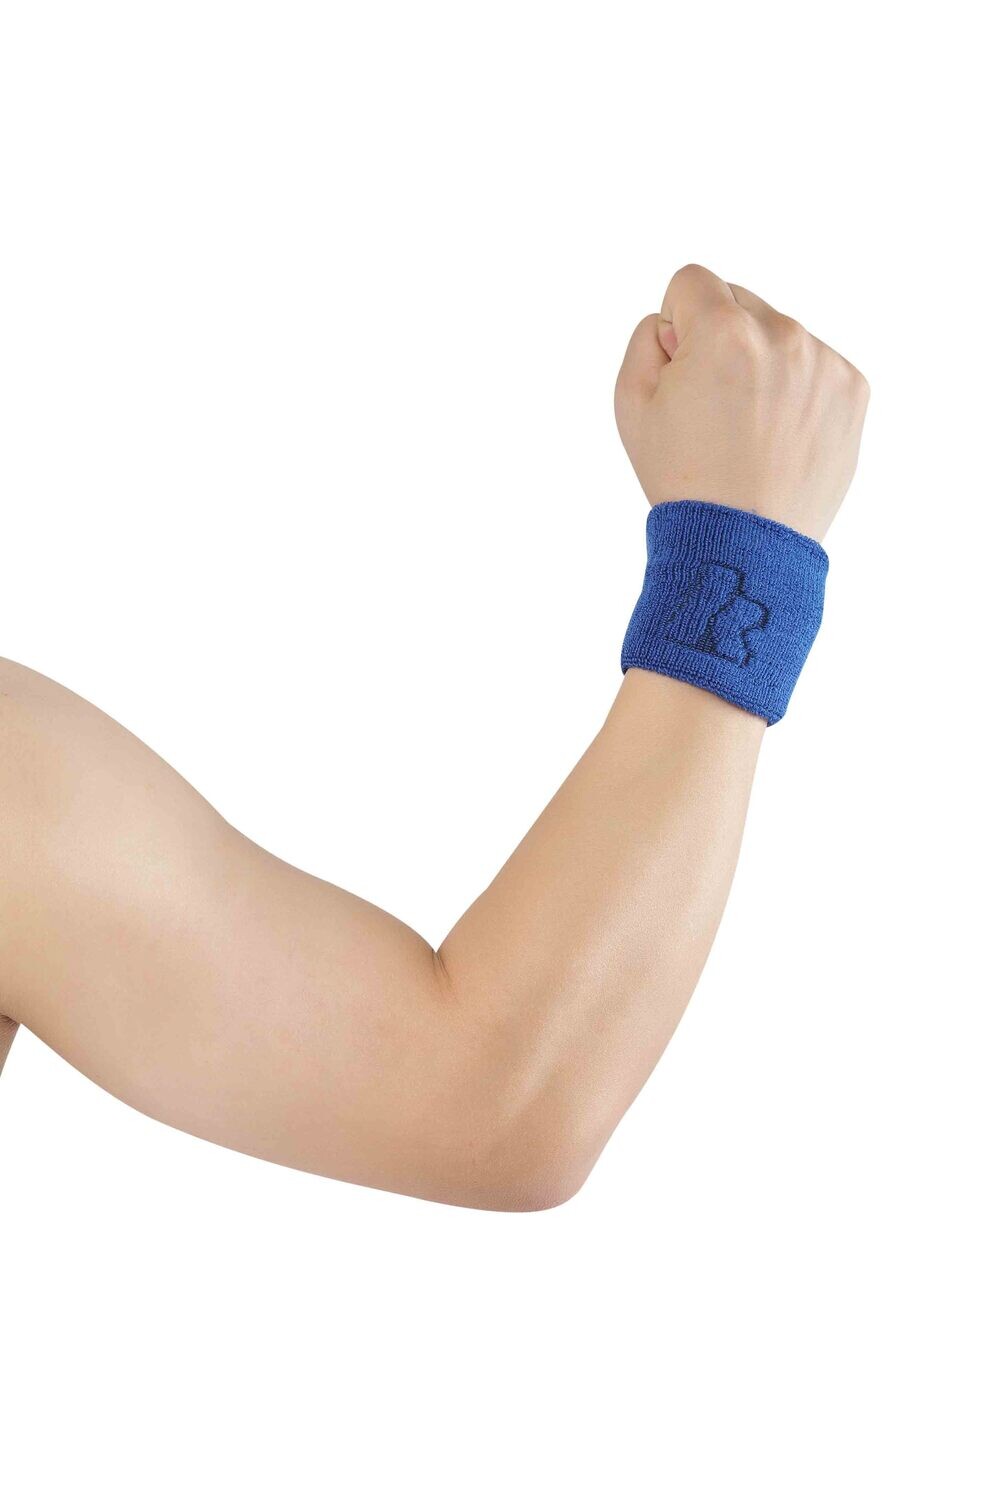 Kawasaki Wrist Support Band - Blue